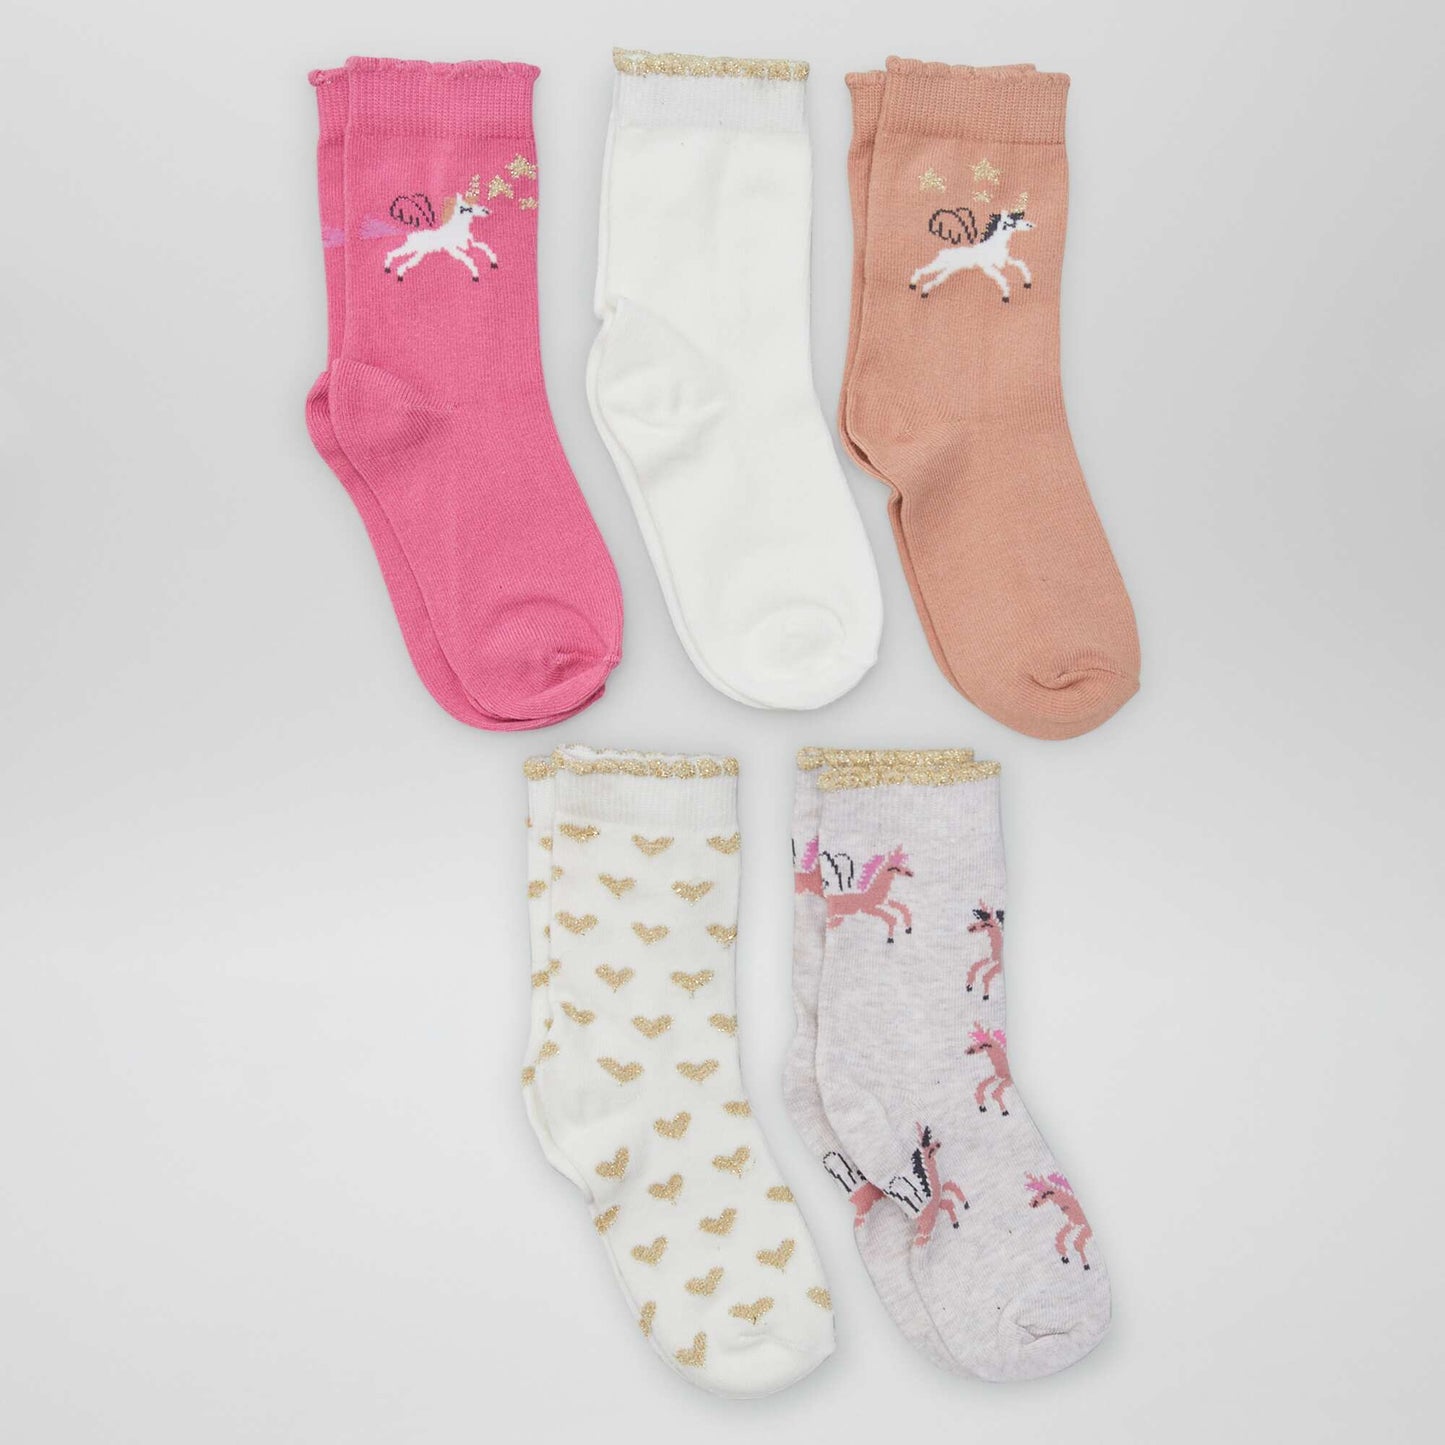 Pack of 5 pairs of animal socks UNICORN